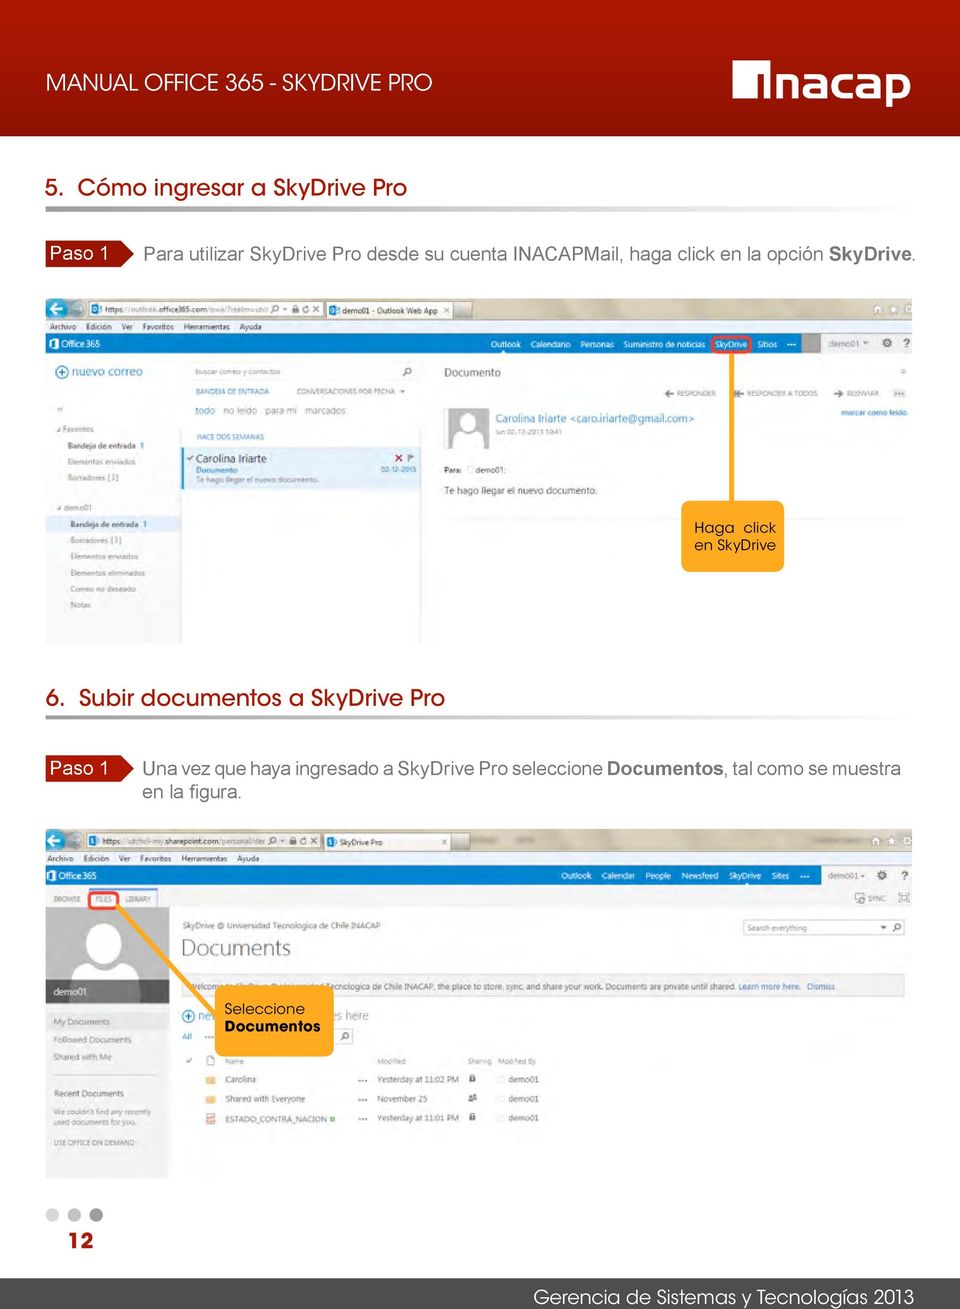 Subir documentos a SkyDrive Pro Paso 1 Una vez que haya ingresado a SkyDrive